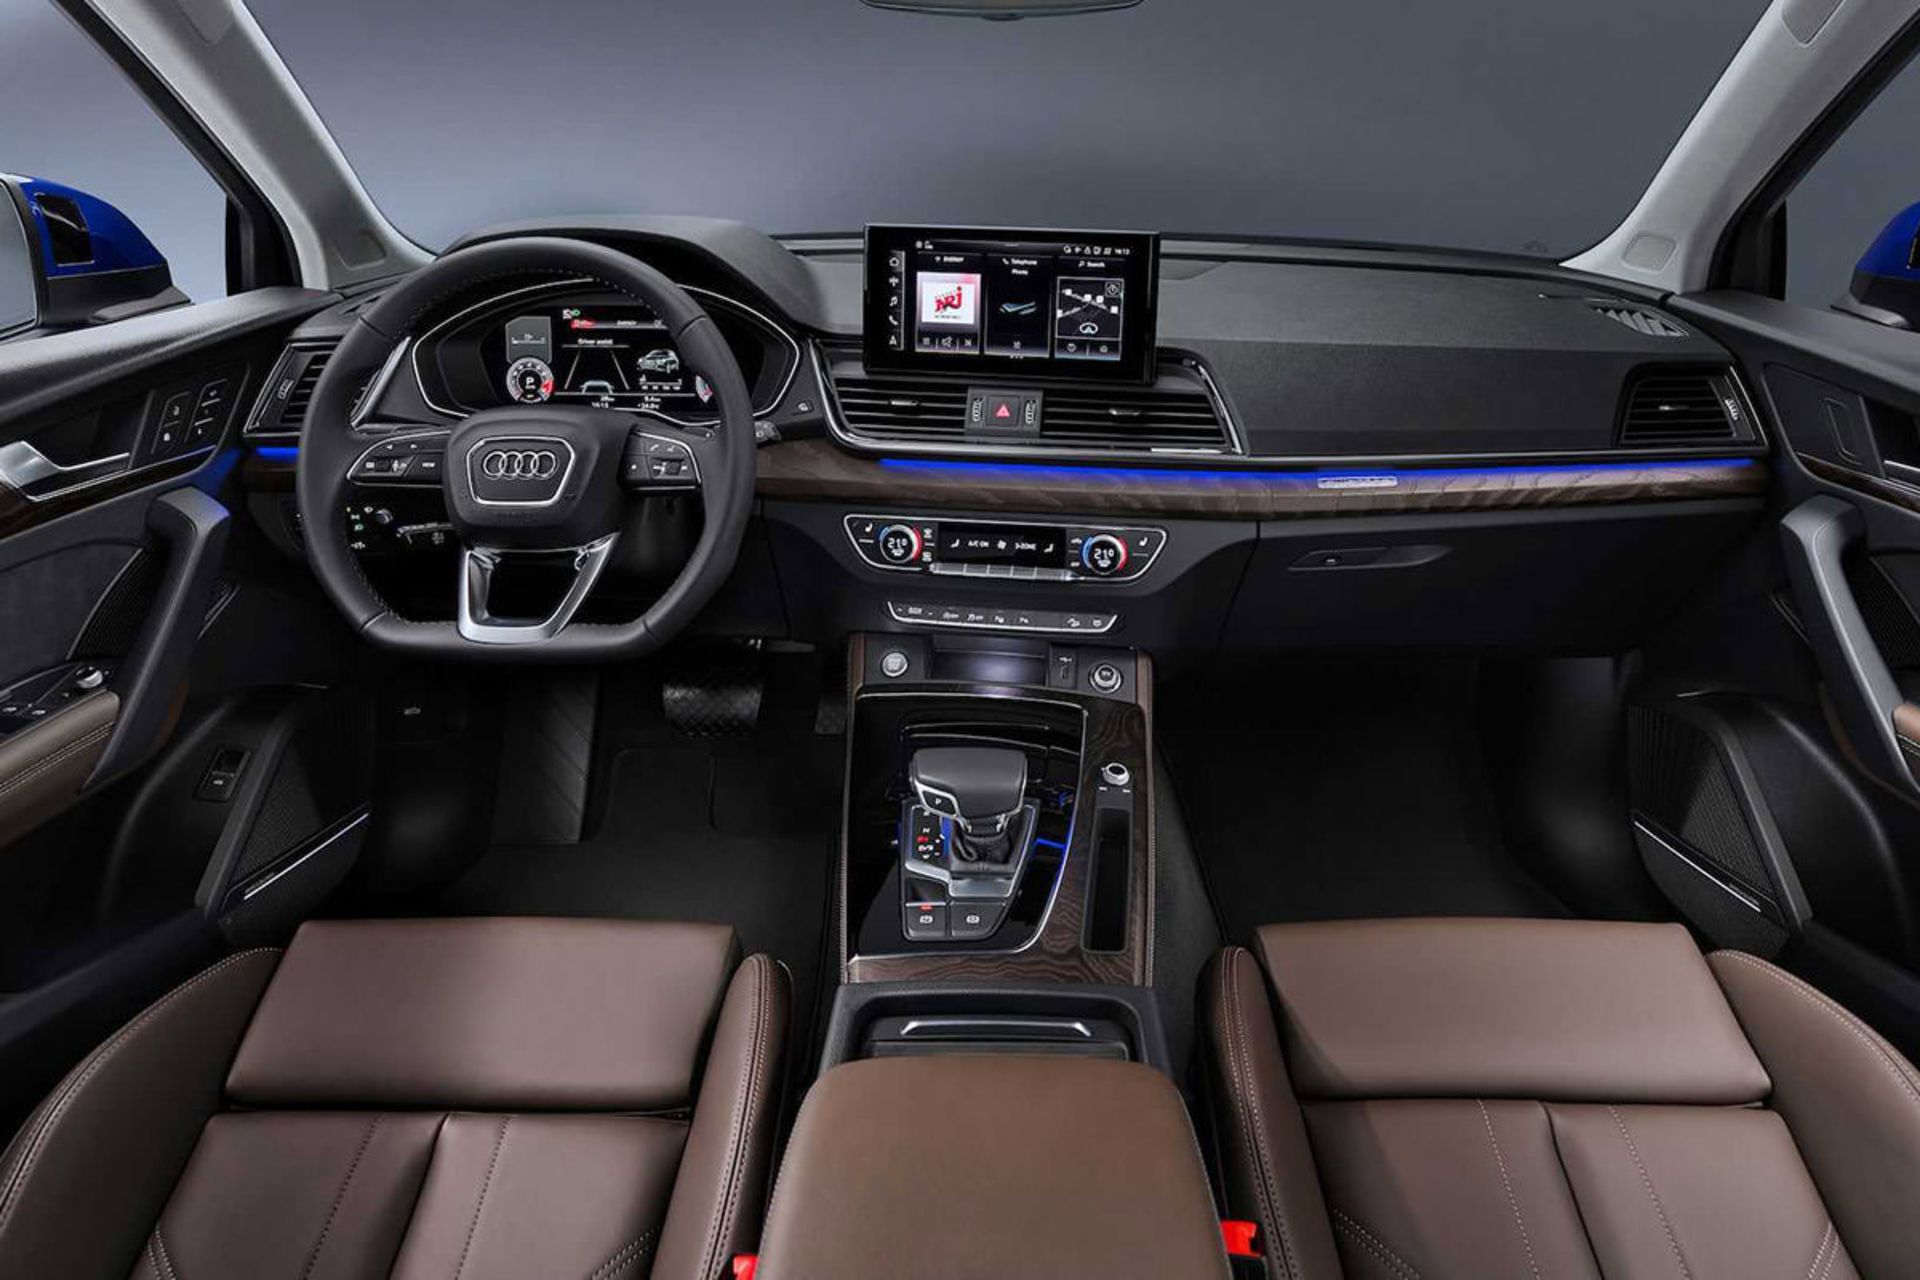 مرجع متخصصين ايران نماي داخل كابين كراس اور آئودي كيو 5 اسپرت بك / 2021 Audi Q5 Sportback 